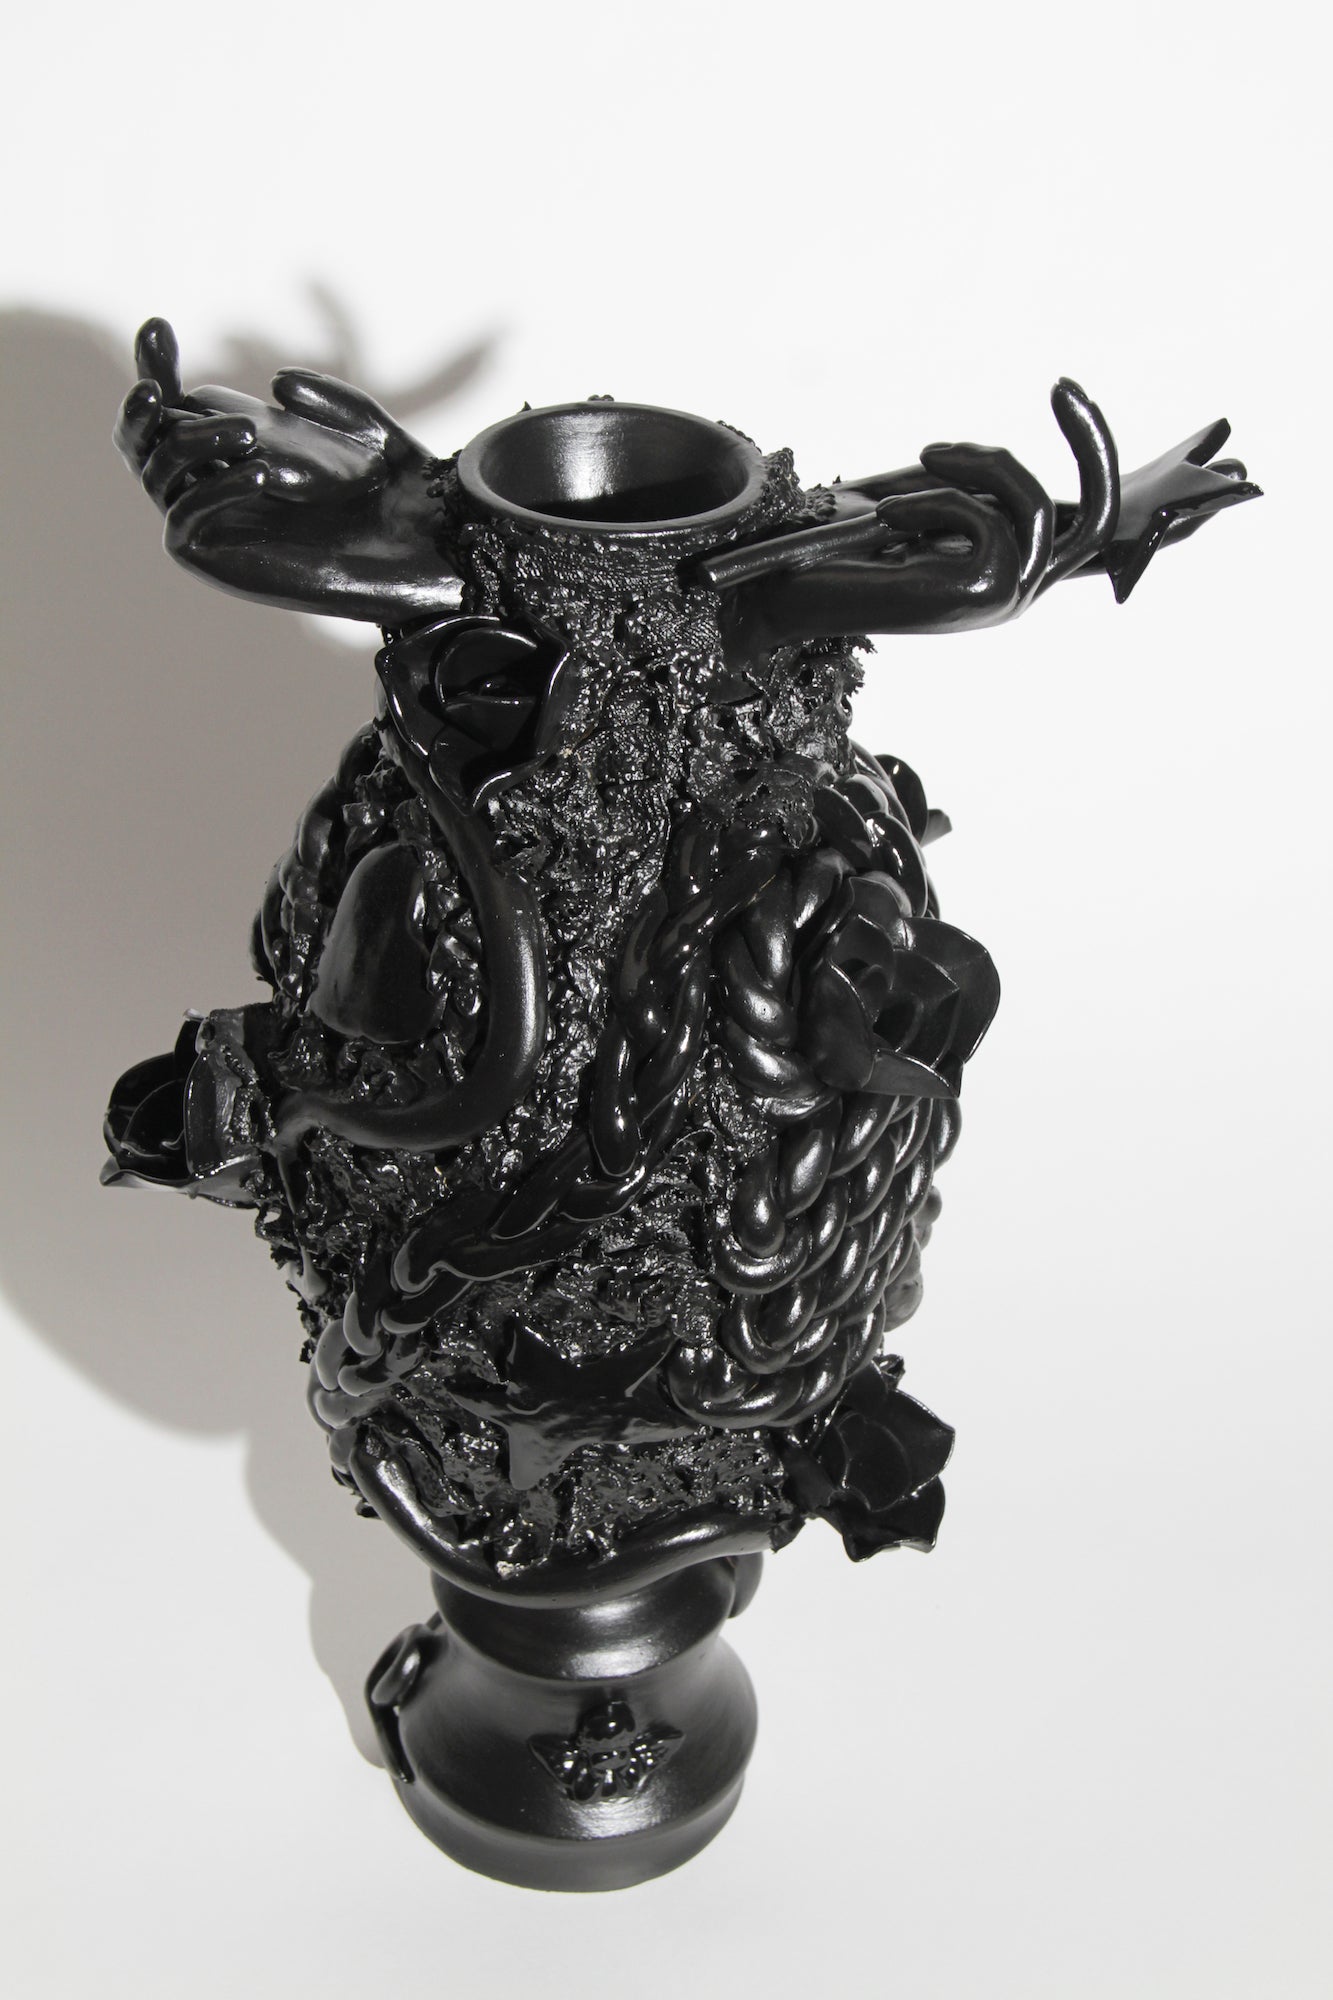 Jen Dwyer, "Circe's Vase"